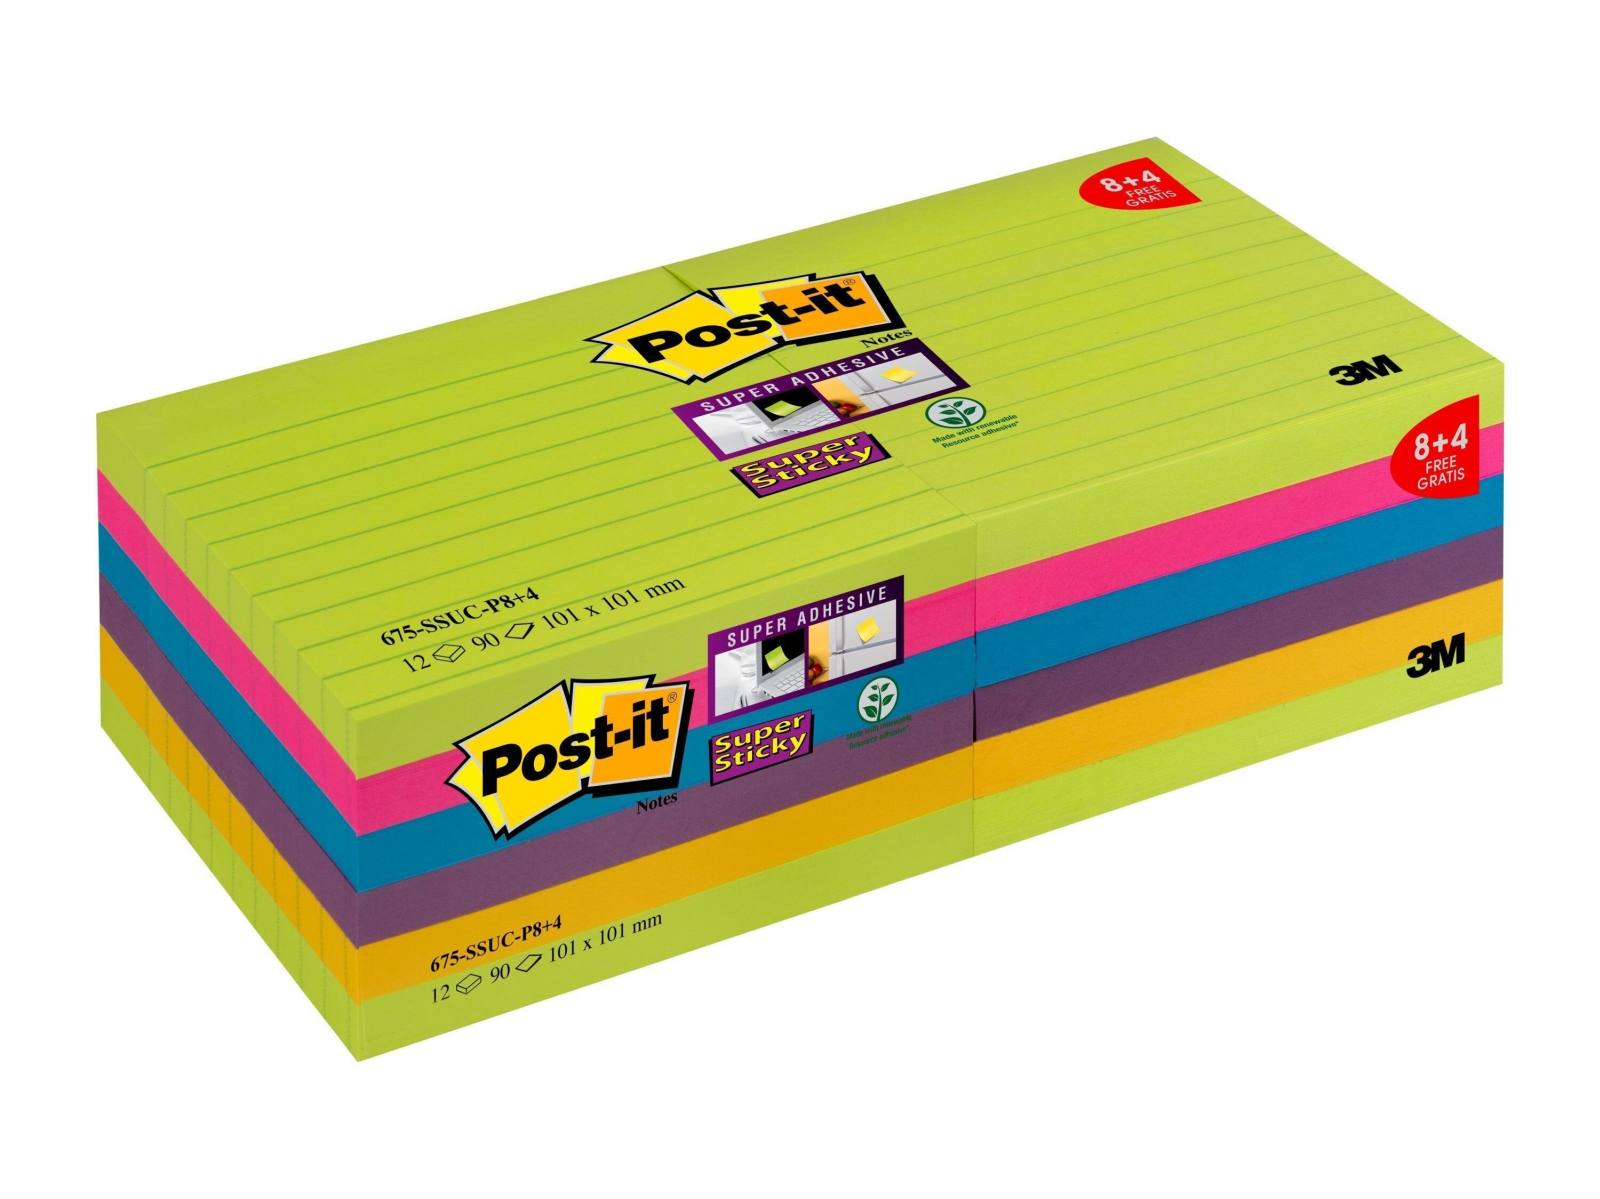 3M Post-it Super Sticky Notes Promotion 4690-SSUC-P4+2 6 Blöcke á 90 Blatt zum Vorteilspreis, neongrün, ultrapink, -gelb, -blau, neonorange, 101 mm x 152 mm, liniert, PEFC zertifiziert